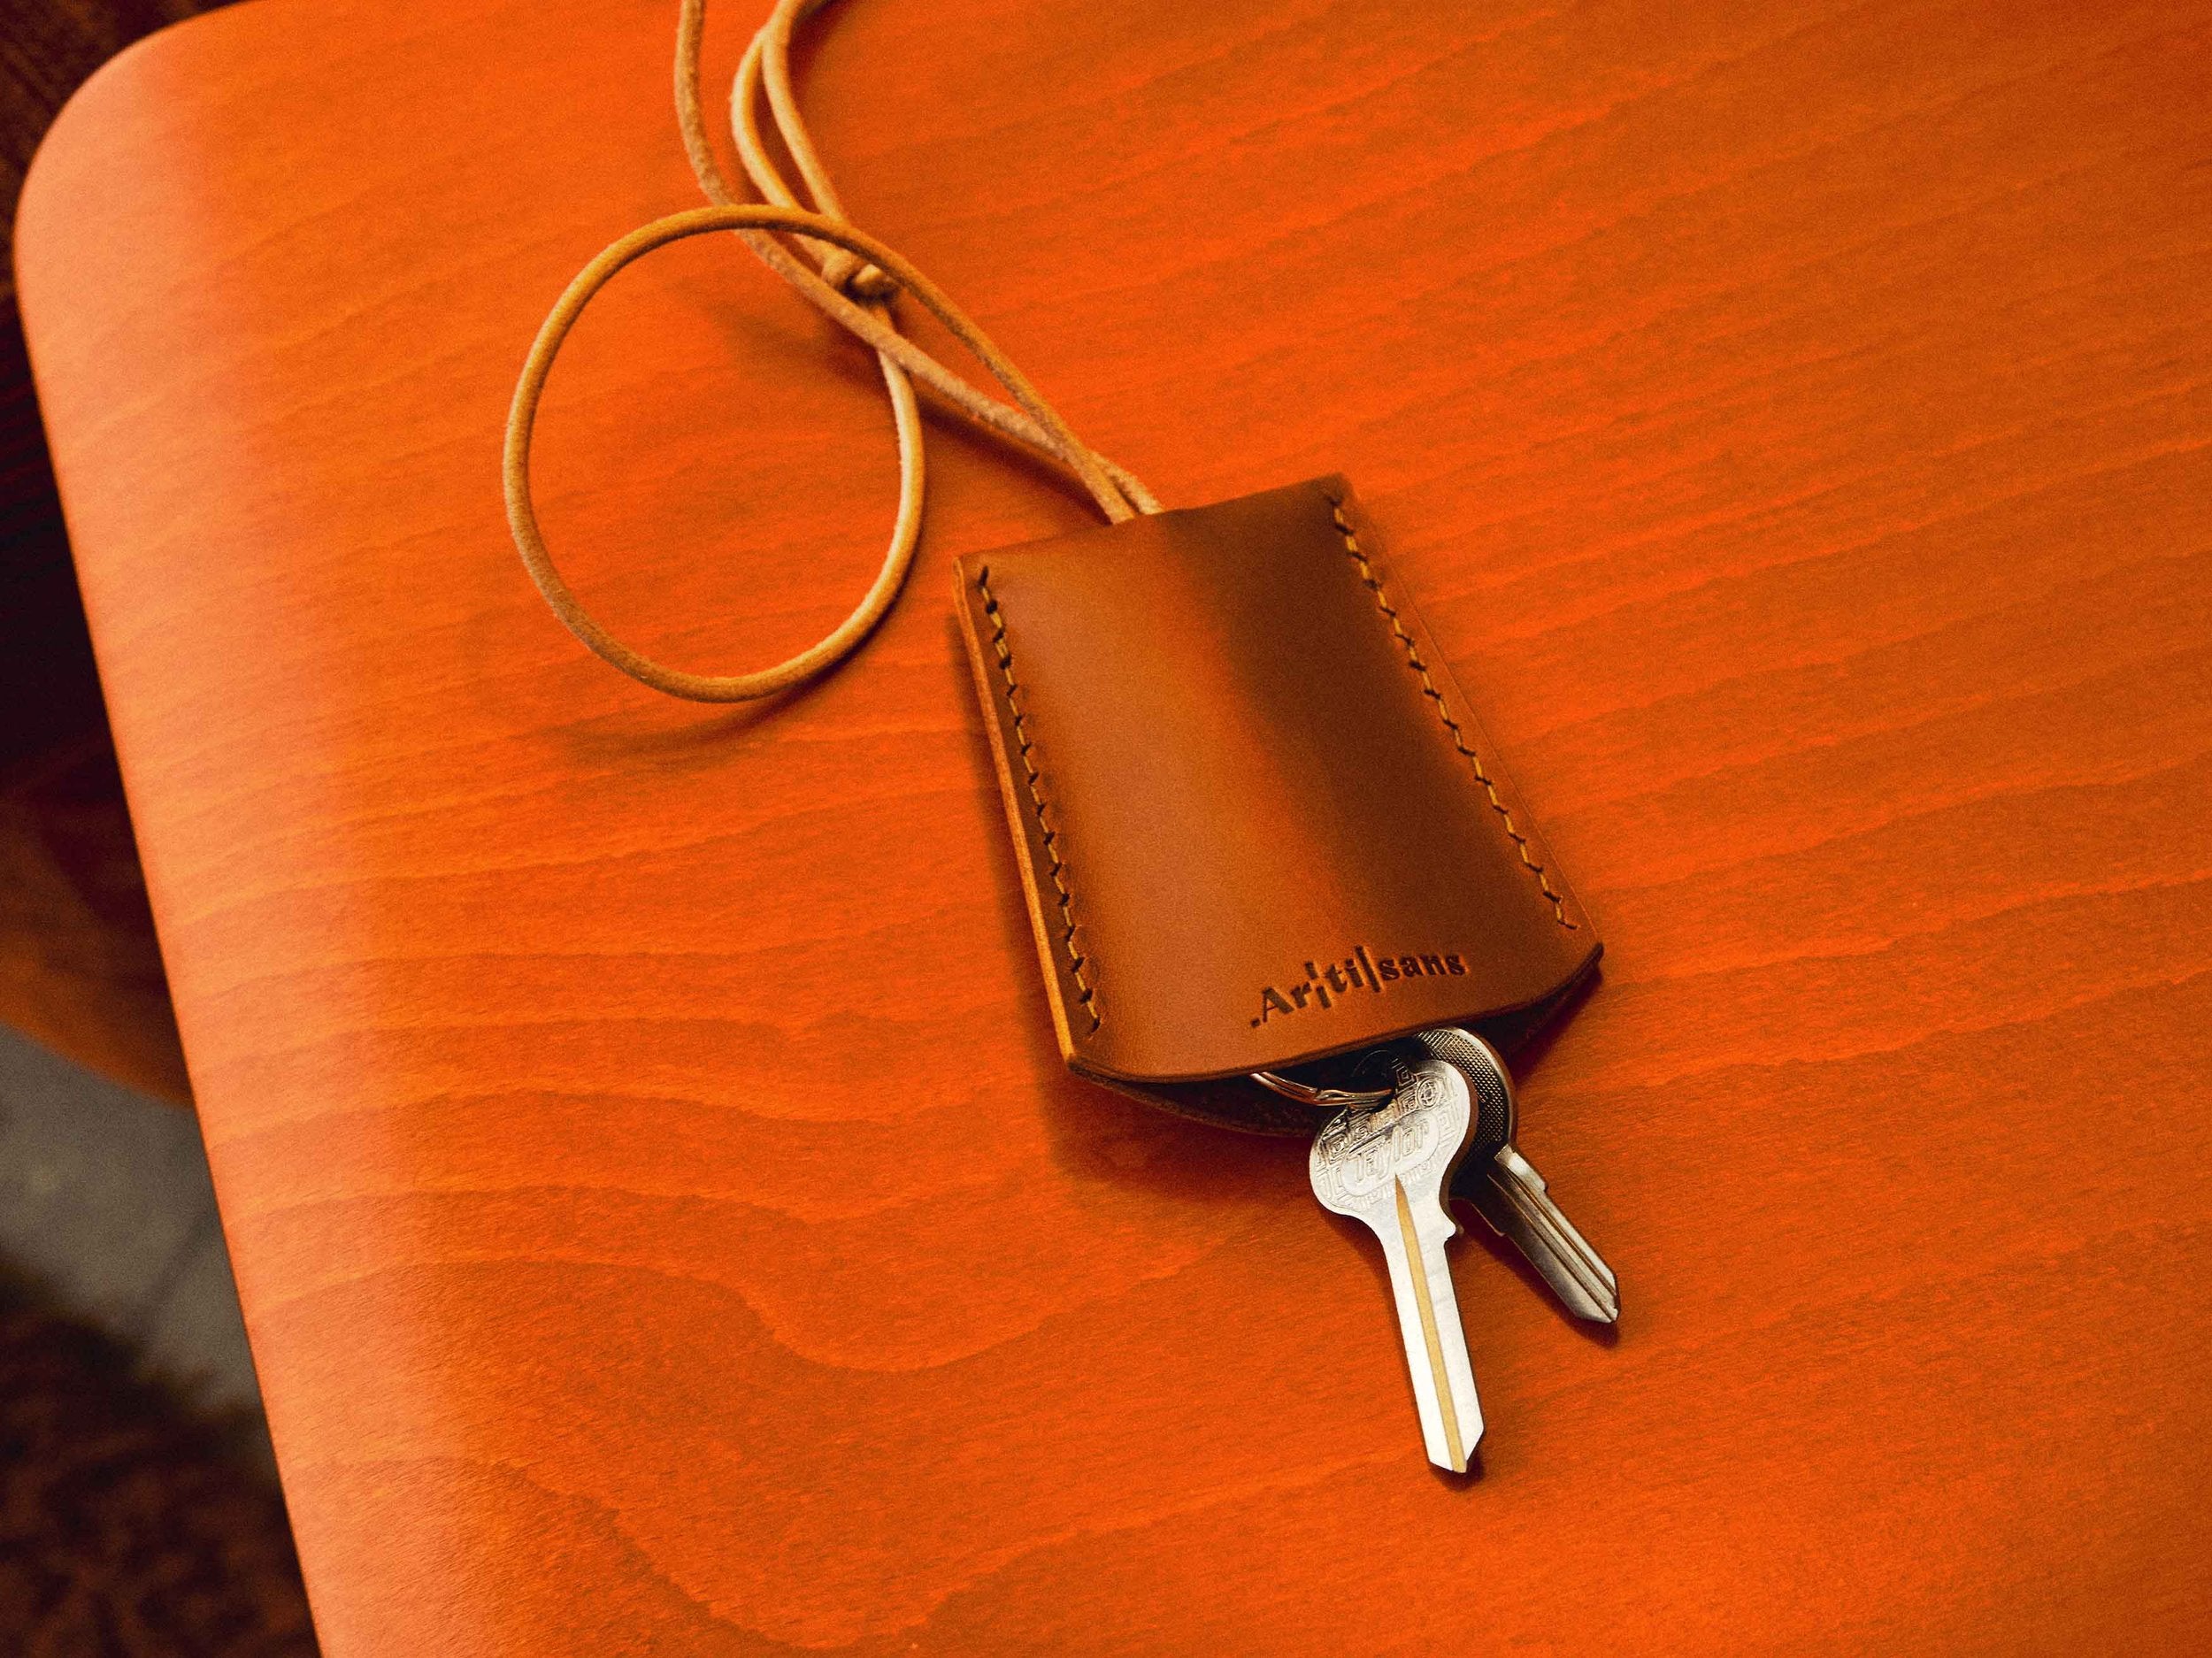 Leather key holder - craft kit